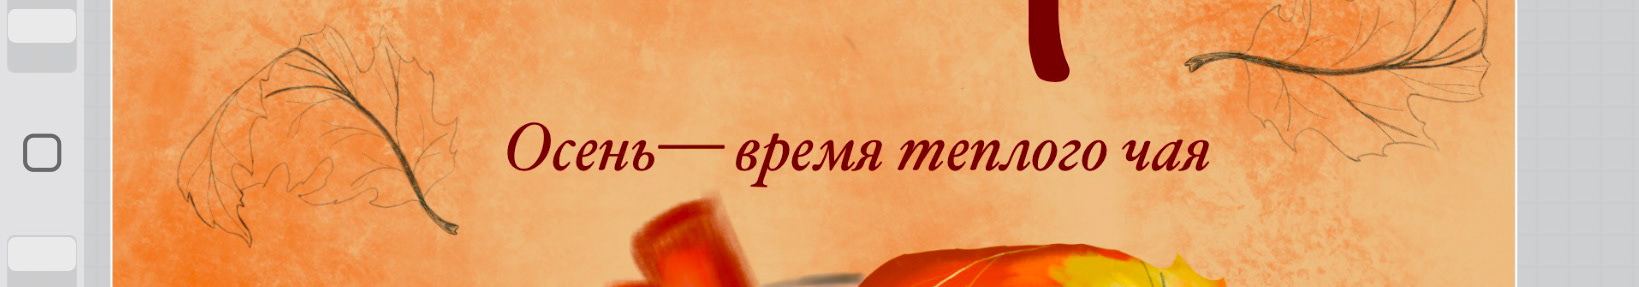 Екатерина Макарова's profile banner